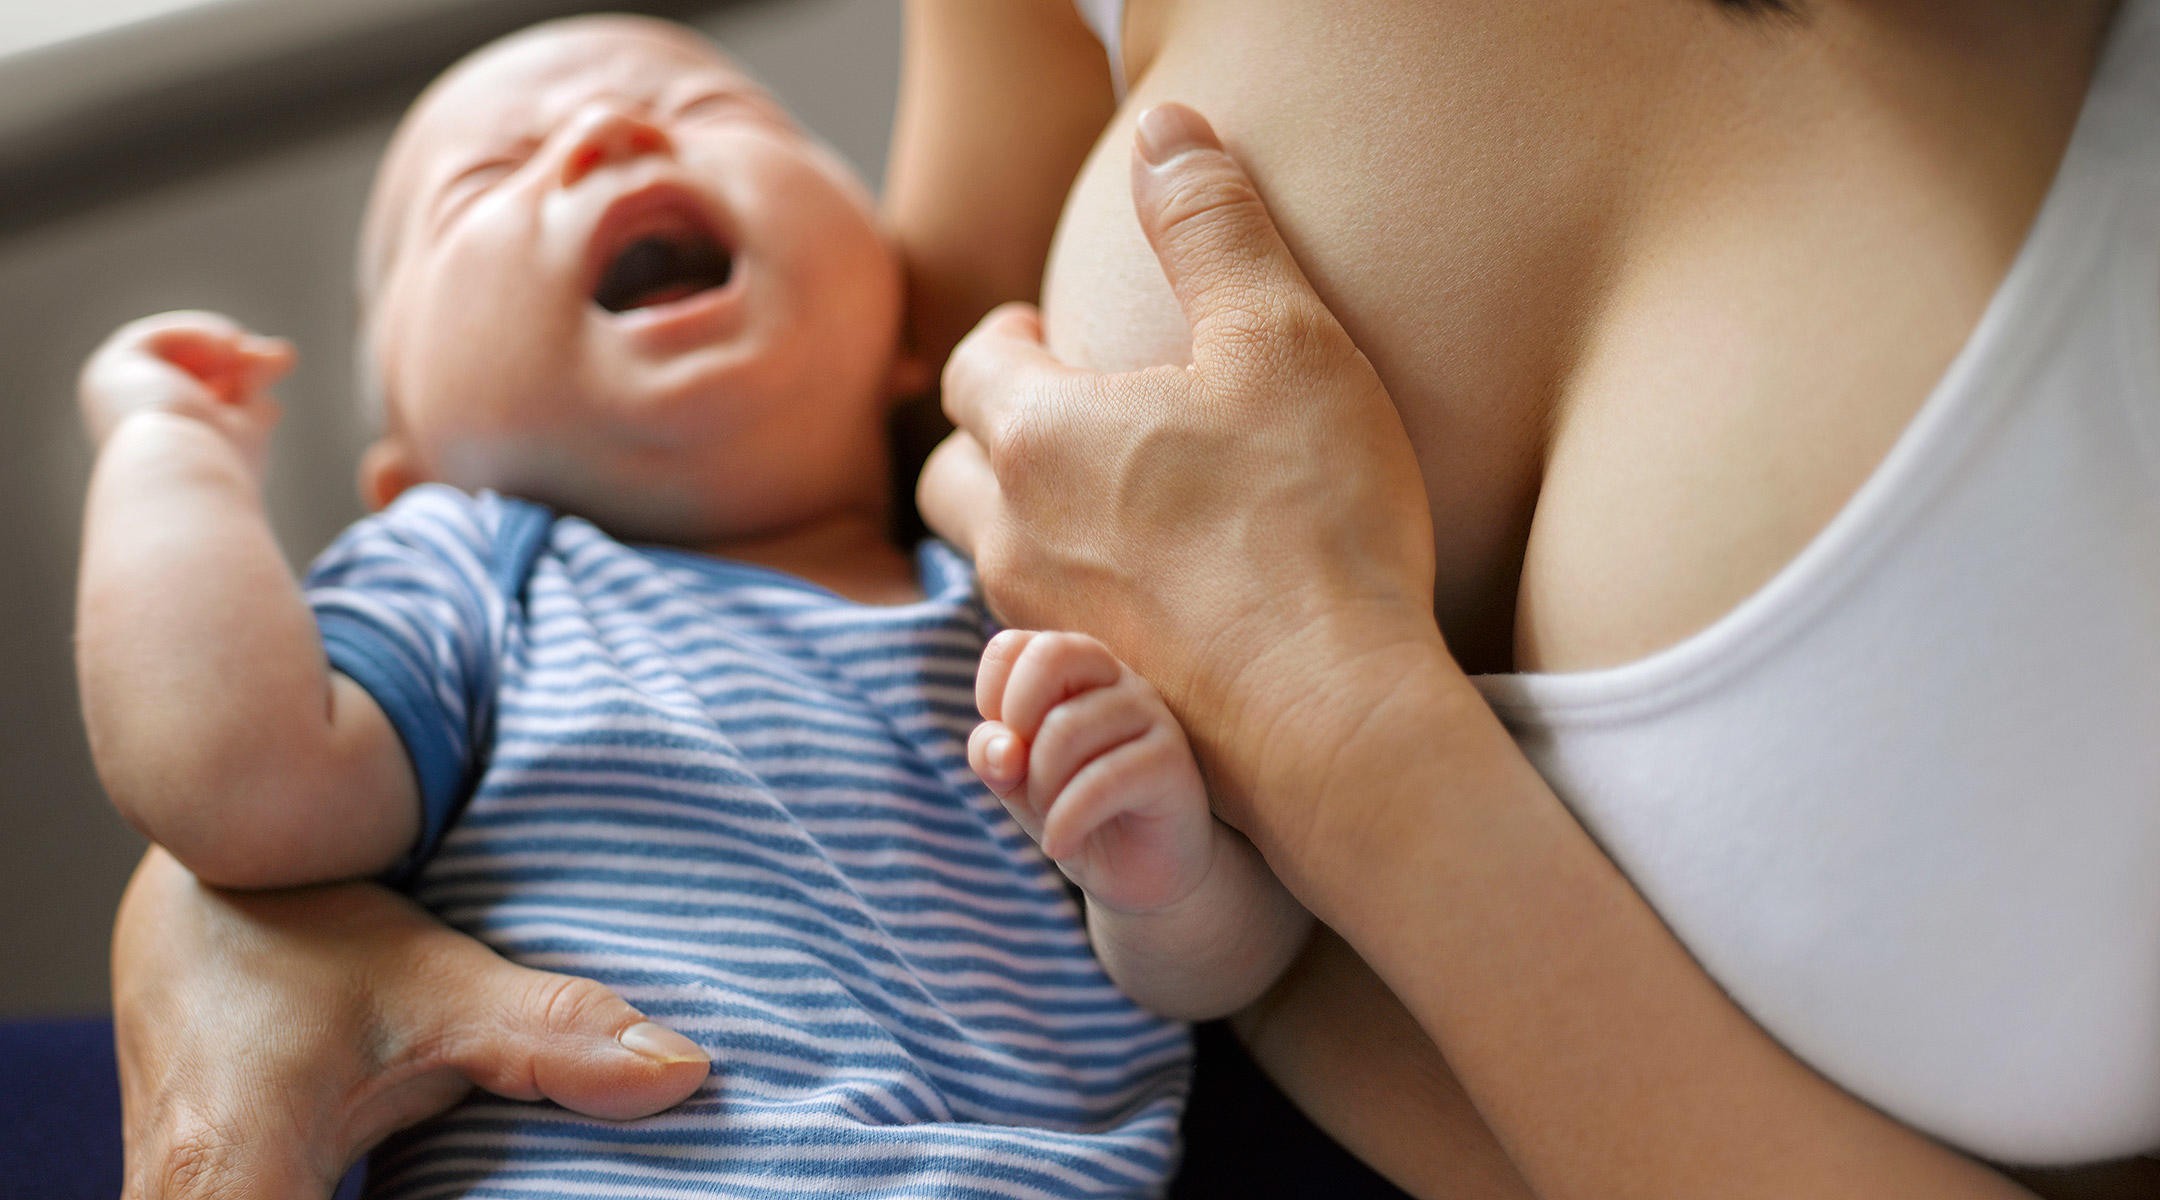 Tốt nhất bạn nên cho bé ti bên ngực không bị nứt hoặc vắt sữa ra bình cho bé bú